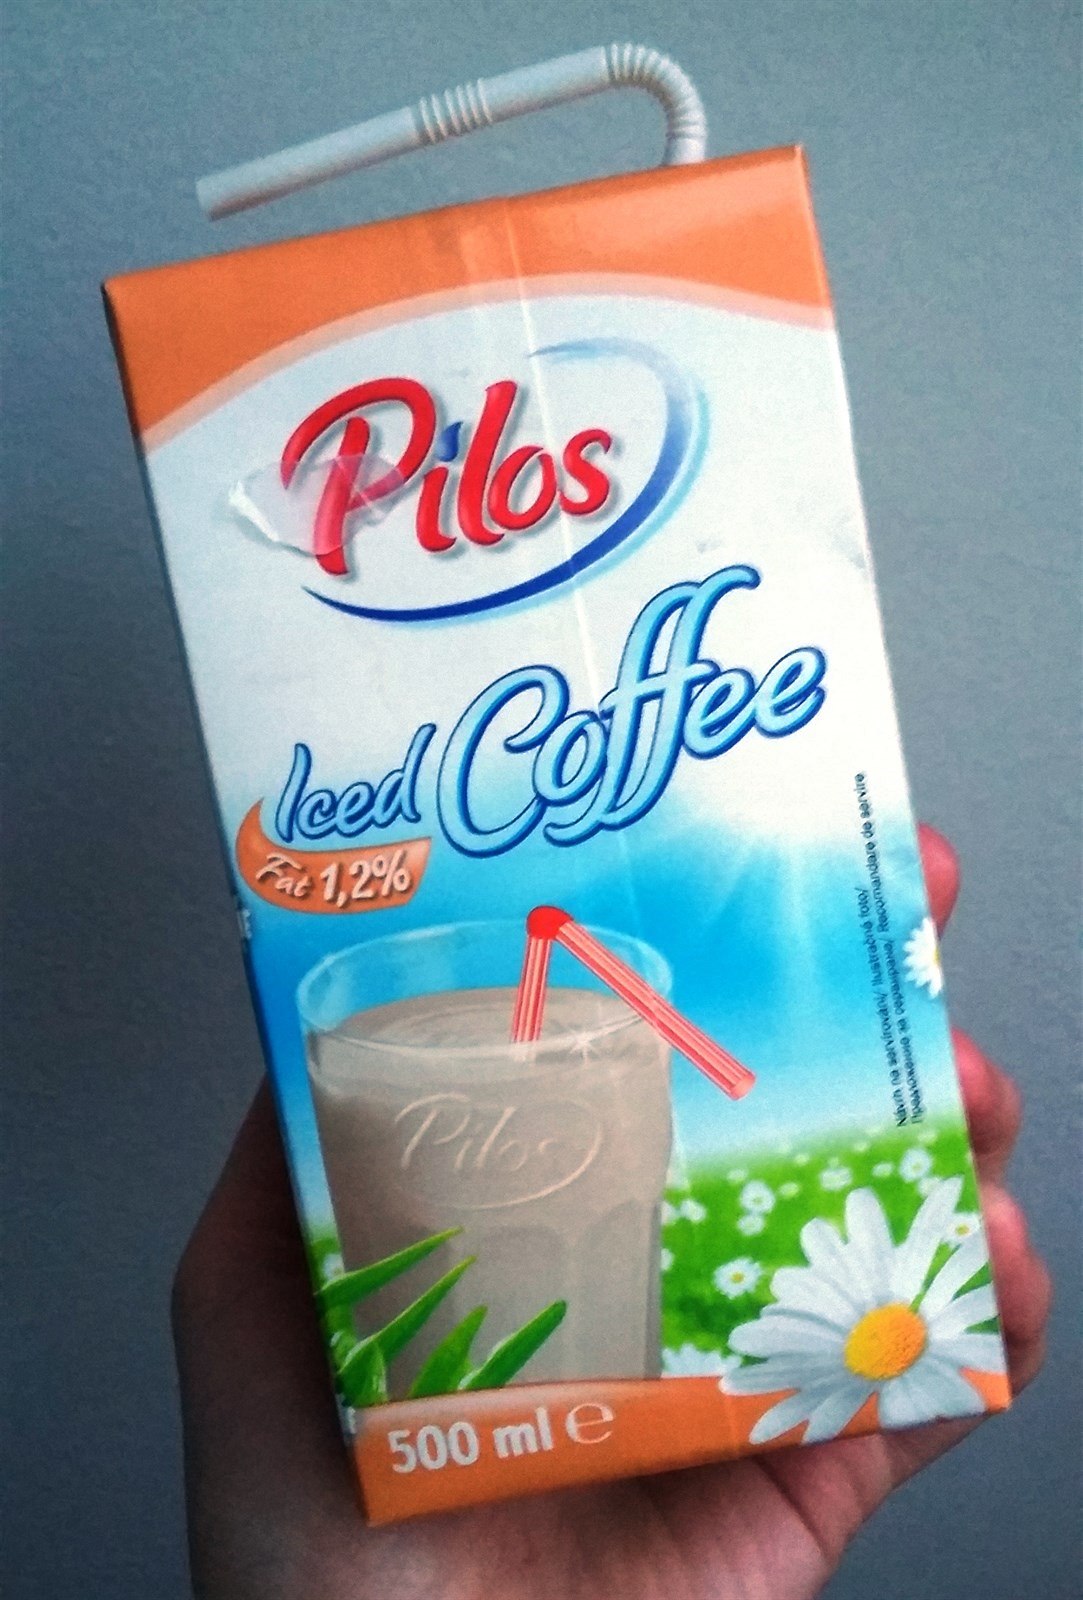 Pilos Ised Coffee.